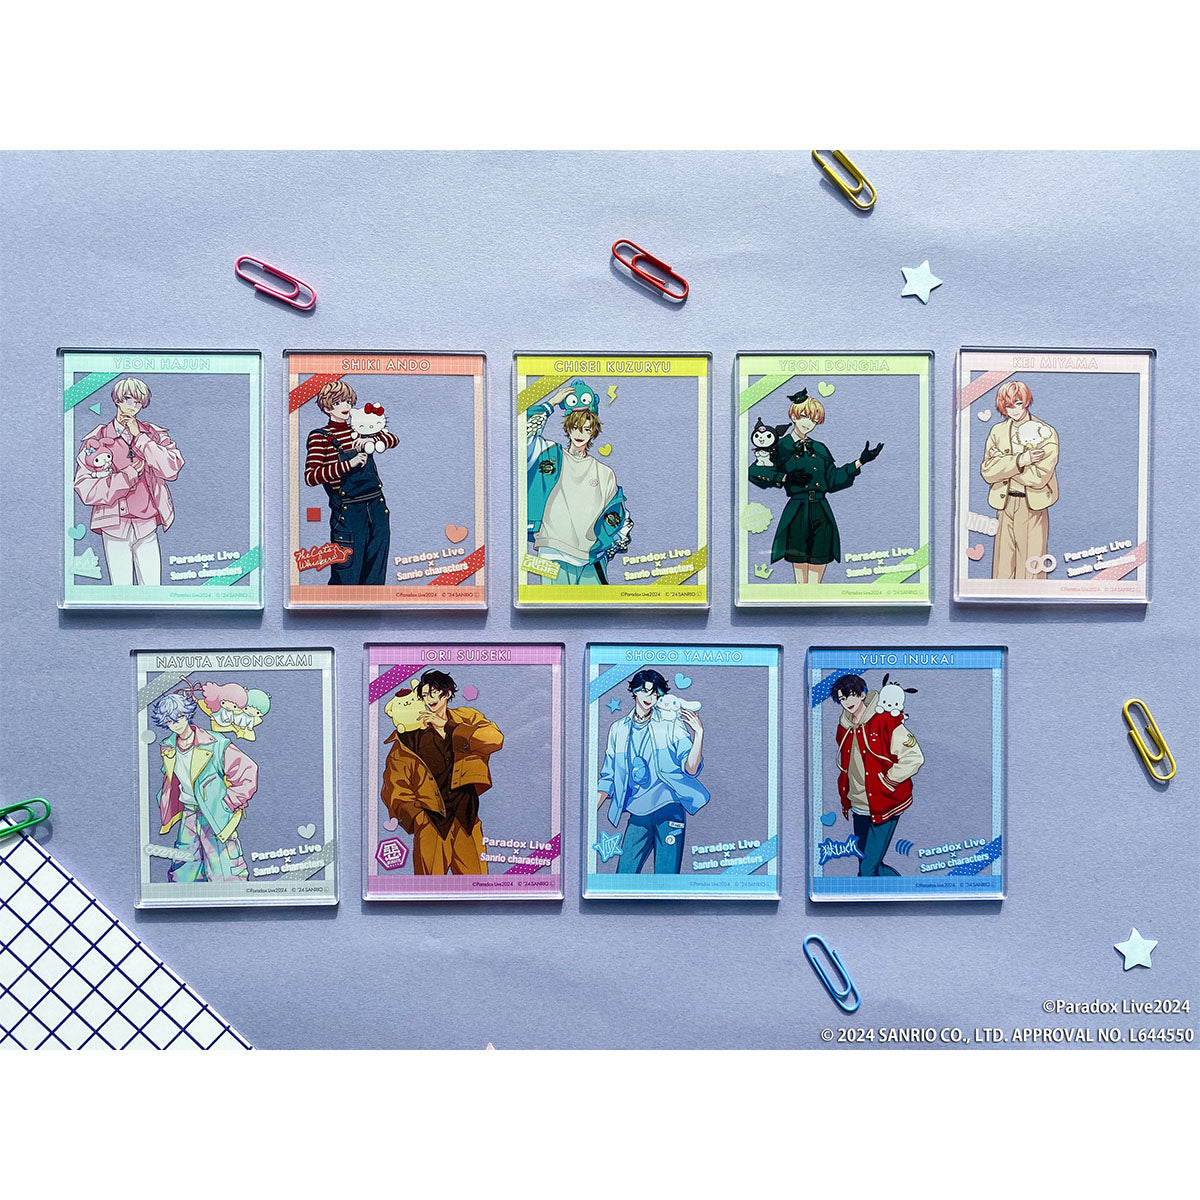 再販】Paradox Live × Sanrio characters アクリルフォトカード 